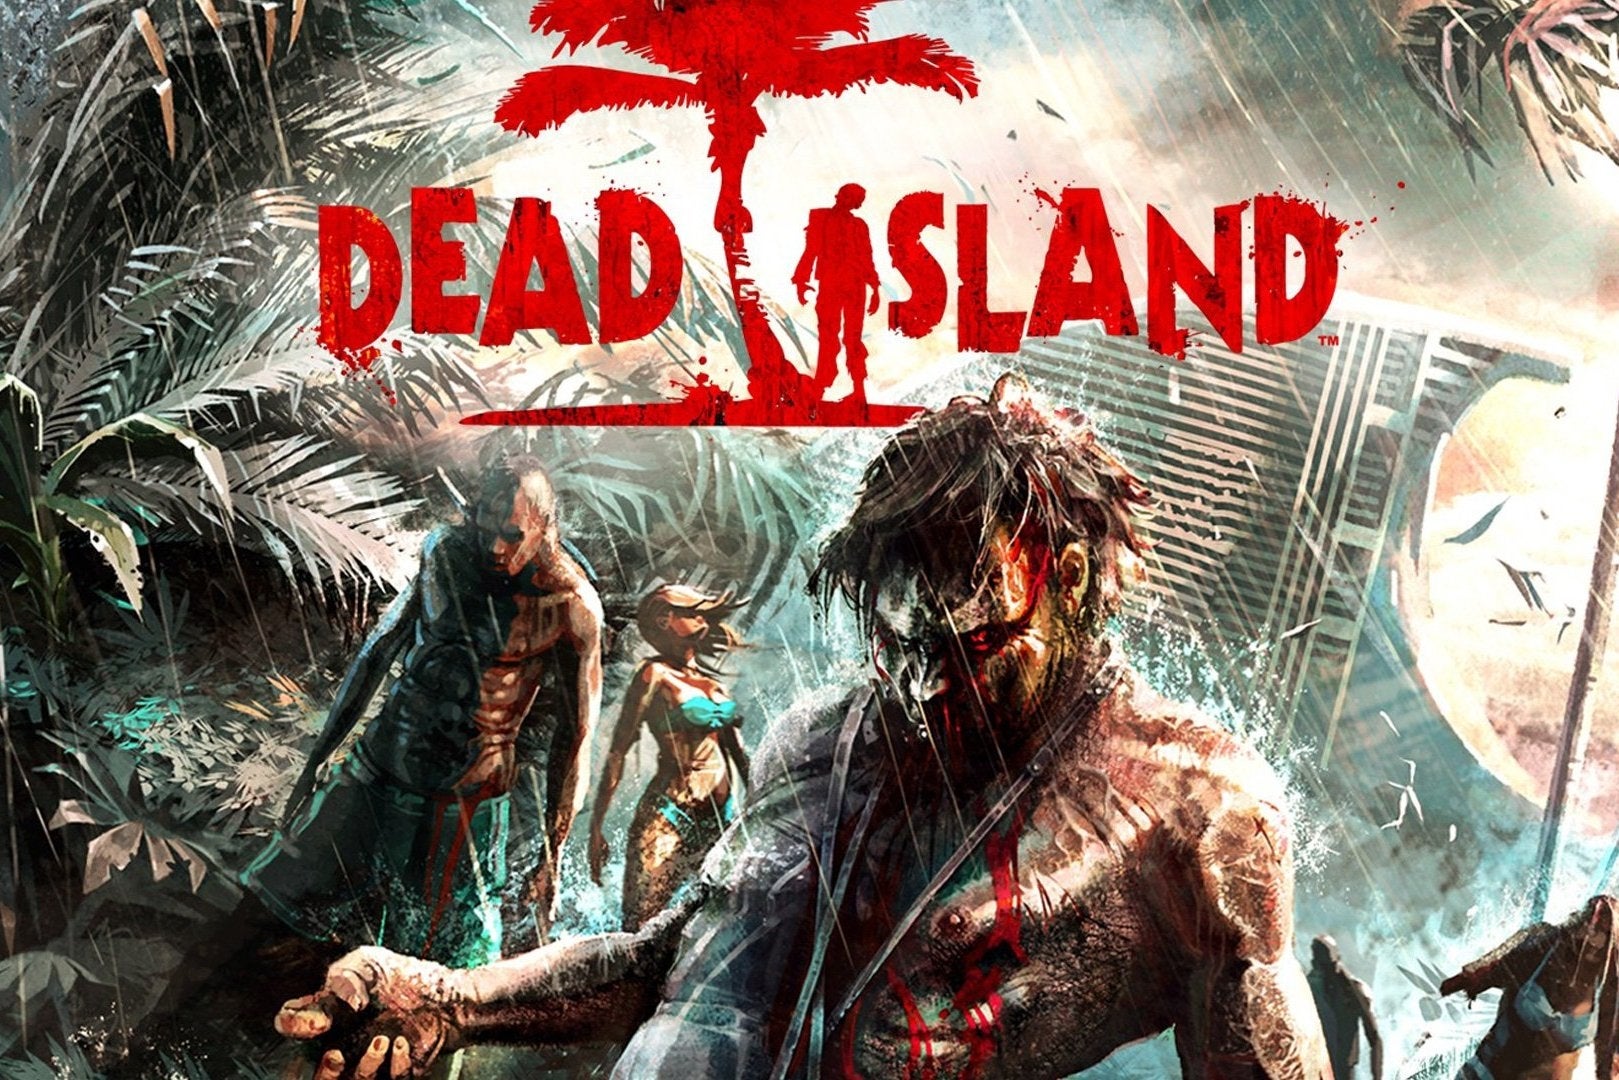 Immagine di Dead Island Retro Revenge avvistato sulla classification board australiana